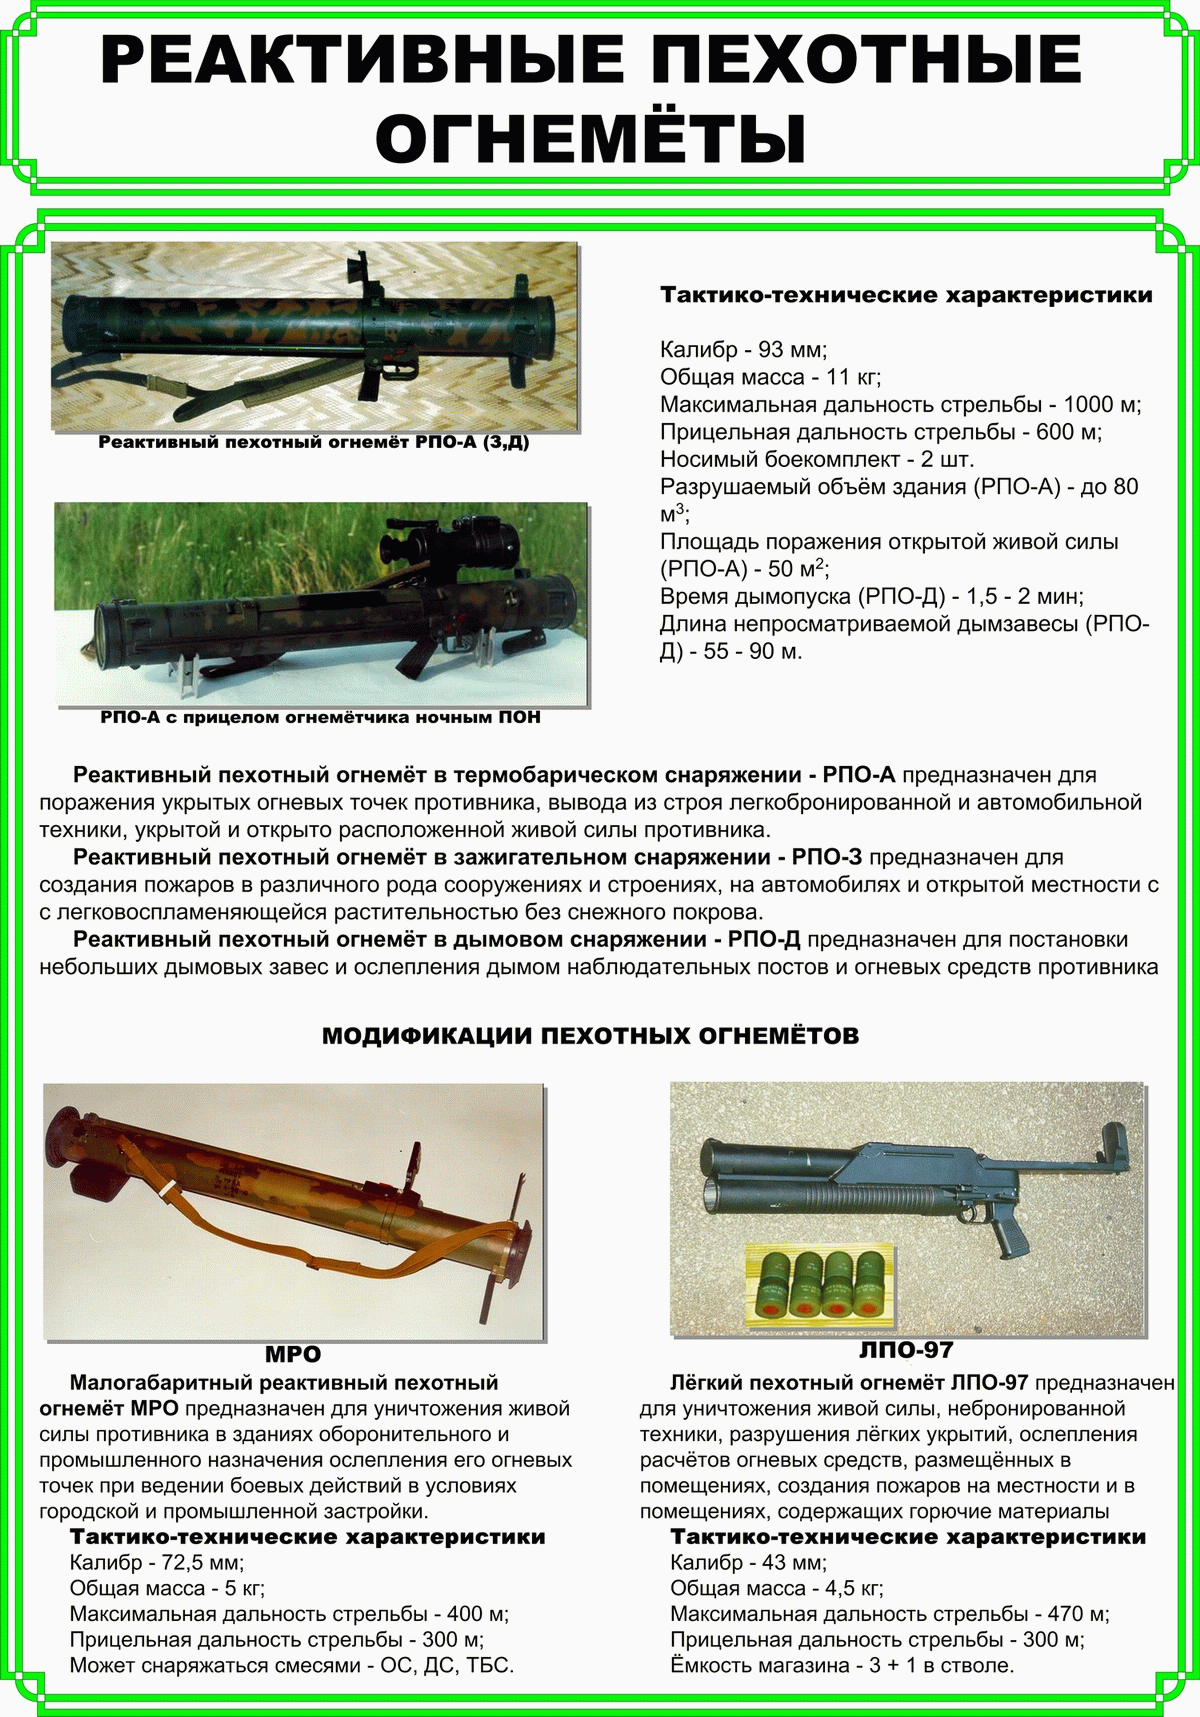 Реактивные пехотные огнеметы и их модификации